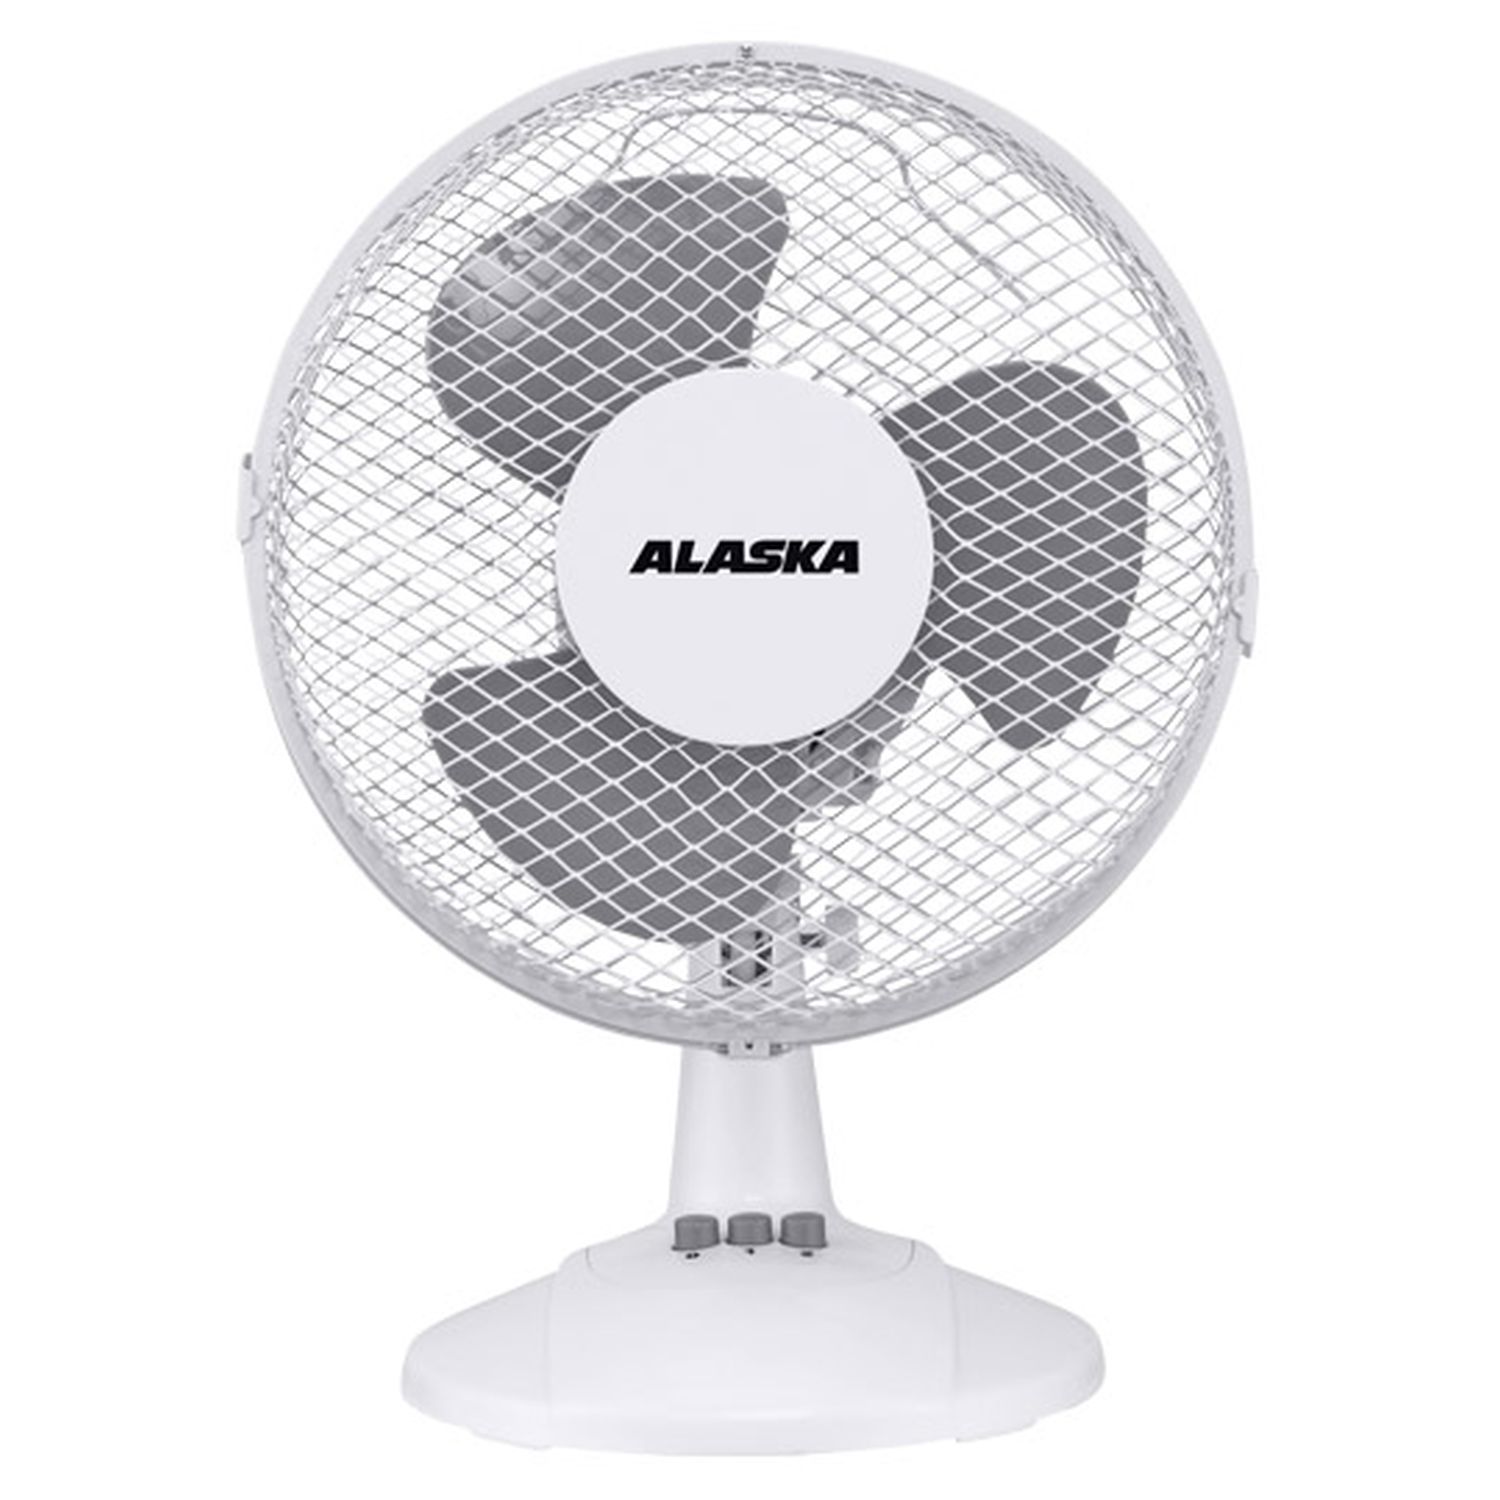 Можно купить вентилятор. Аляска вентилятор sf4200. Вентилятор Alaska swm2001. Вентилятор Alaska sf4009. Вентилятор Alaska DF 3009.